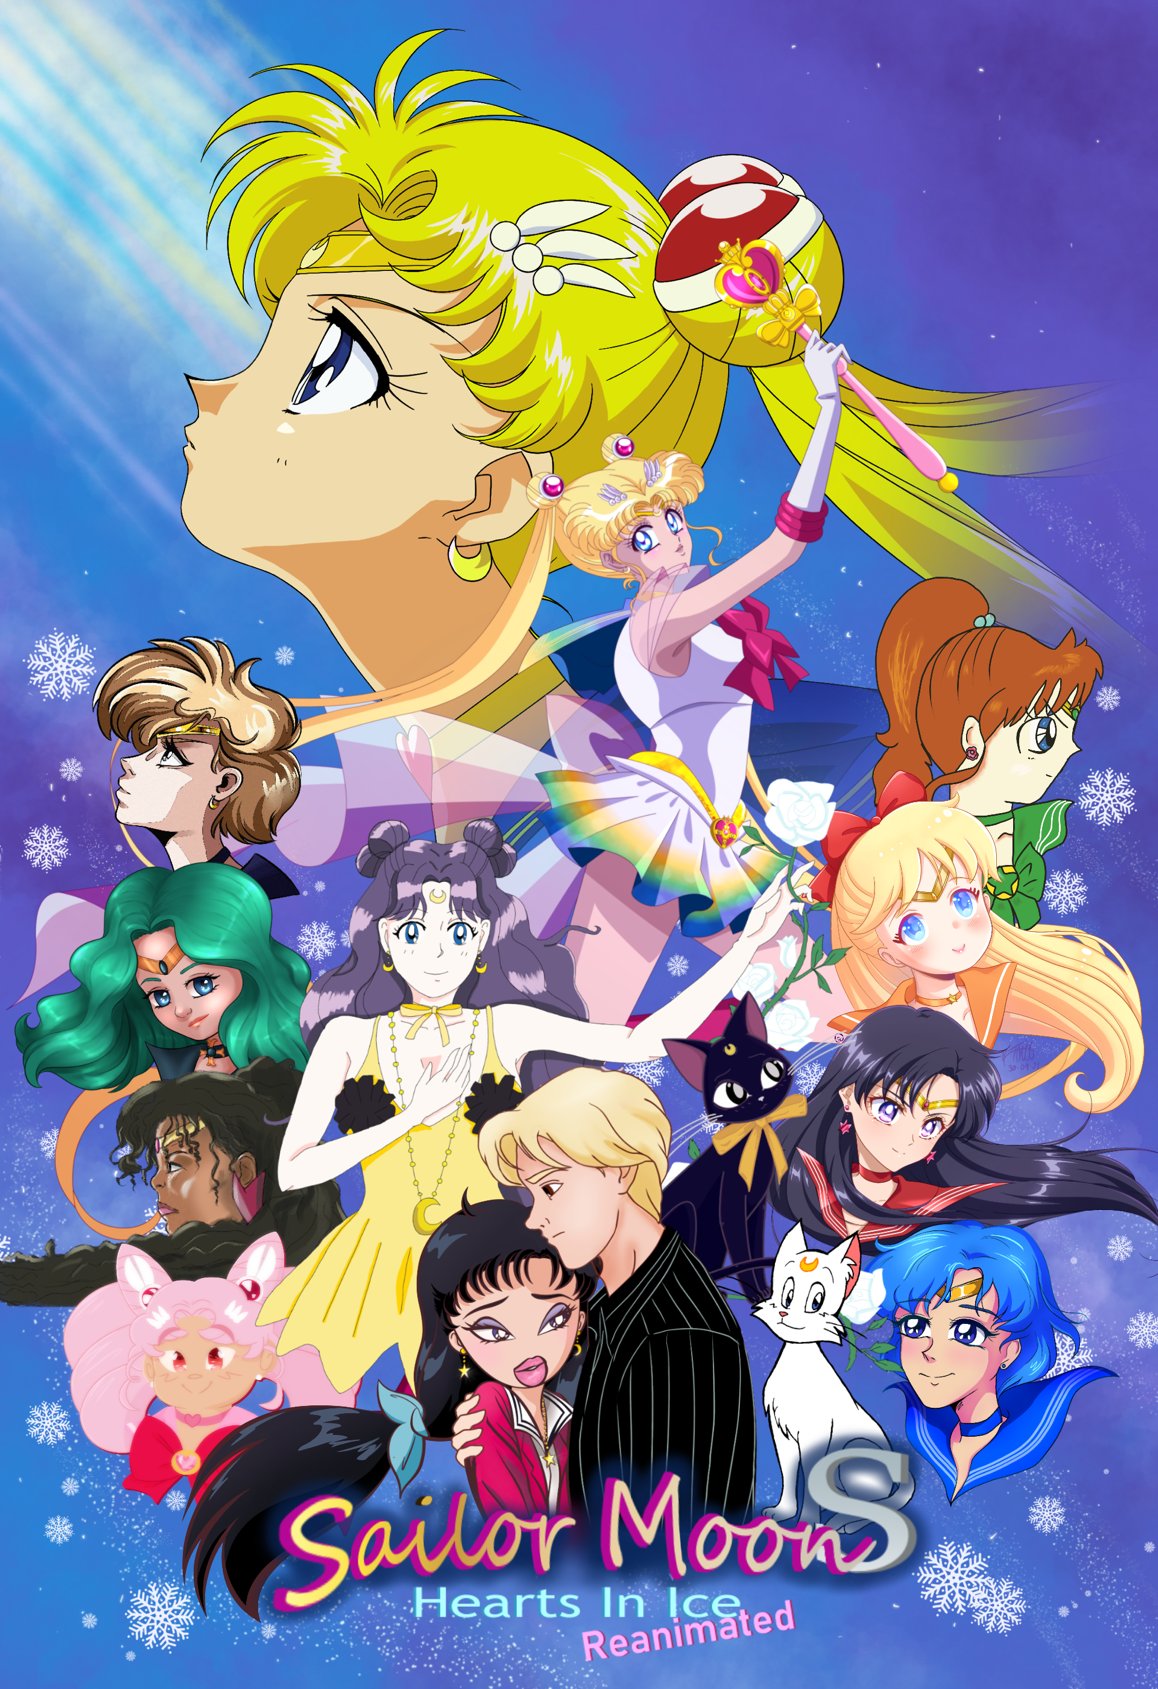 Sailor Moon: Hearts In Ice Reanimated (@SMHeartsinIce) / Twitter